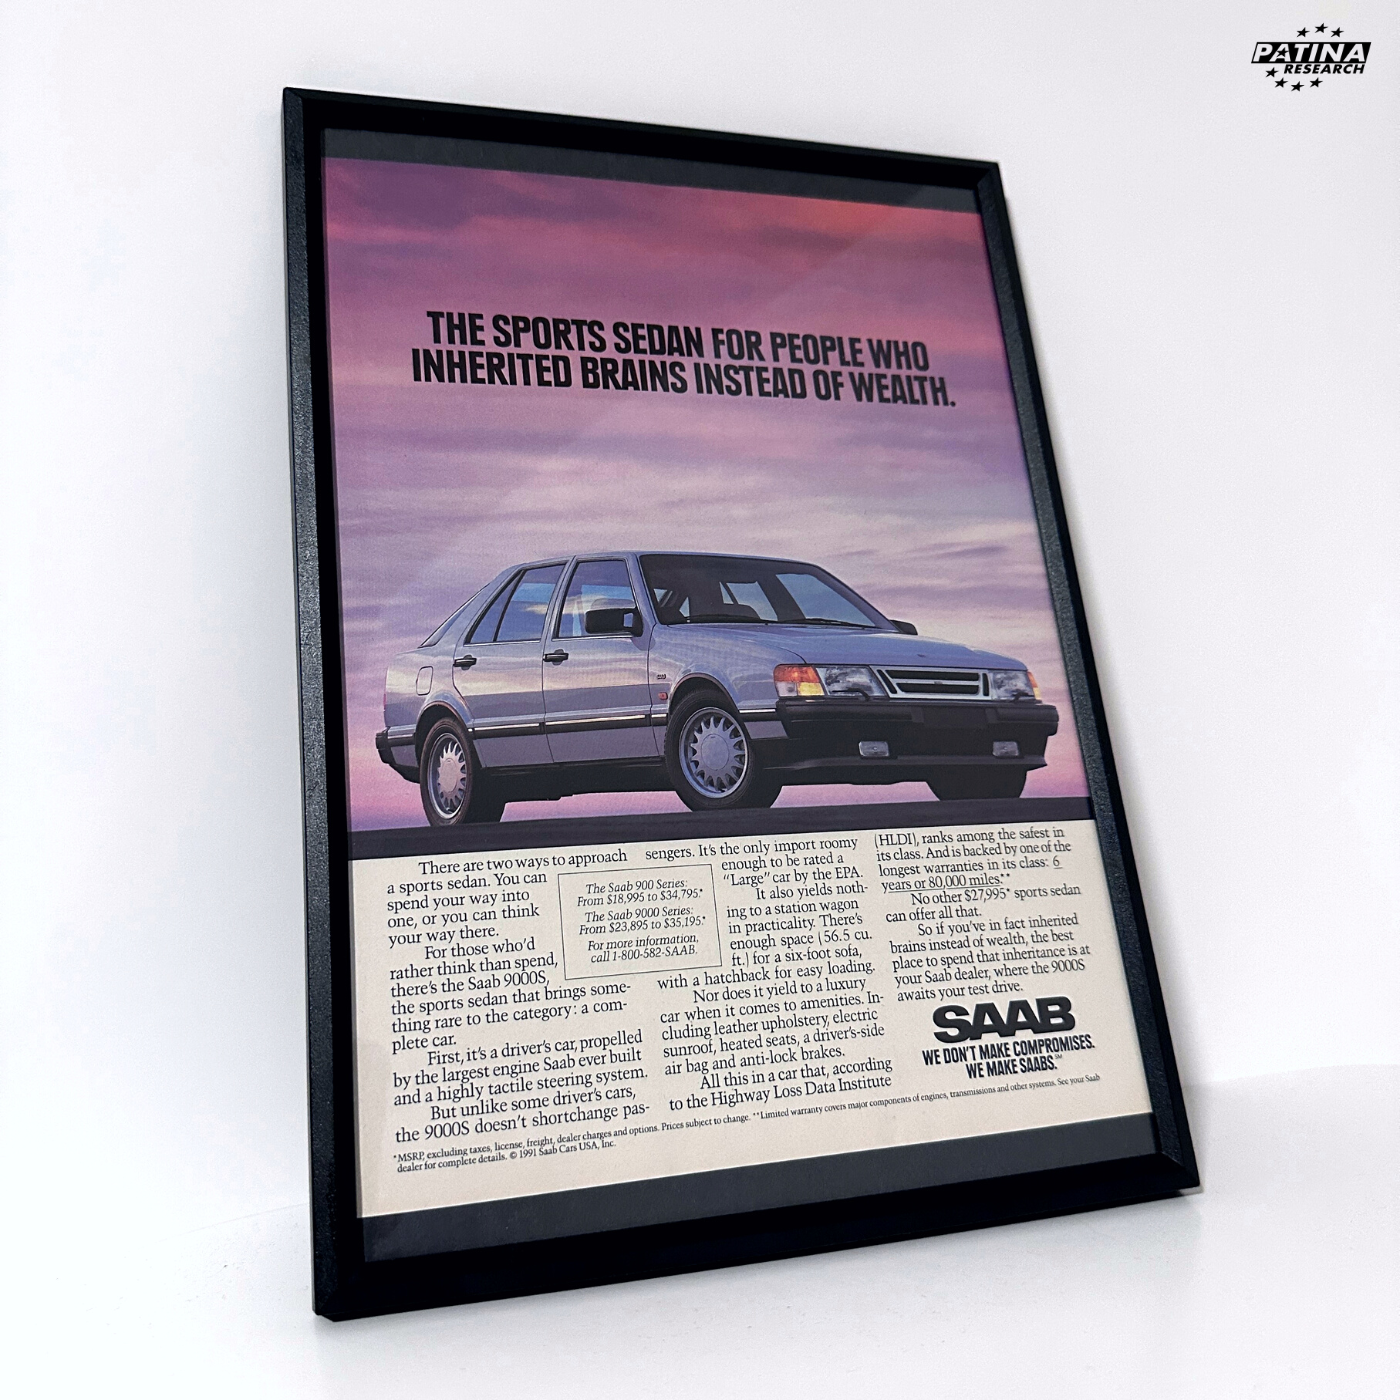 SAAB 9000S Sports sedan for people framed ad